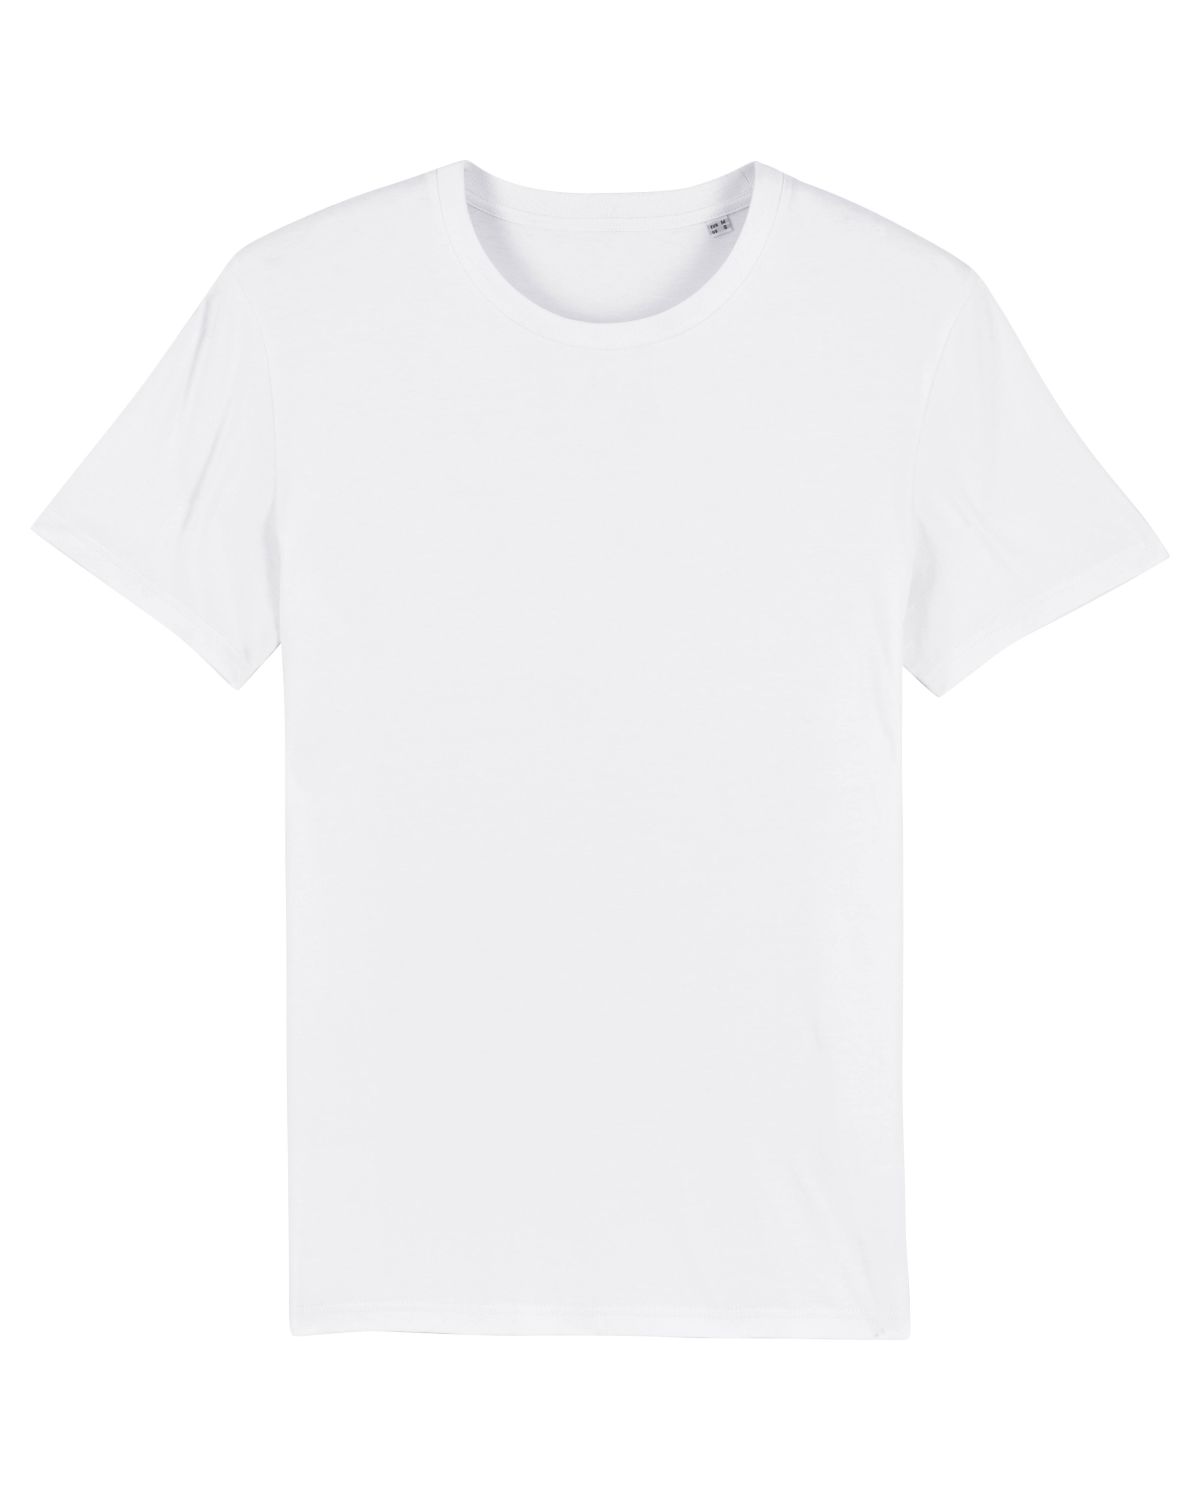 Stylo de Vêtements Textile Permanent Marqueur Tissu T-shirt 2mm blanc  lahomia